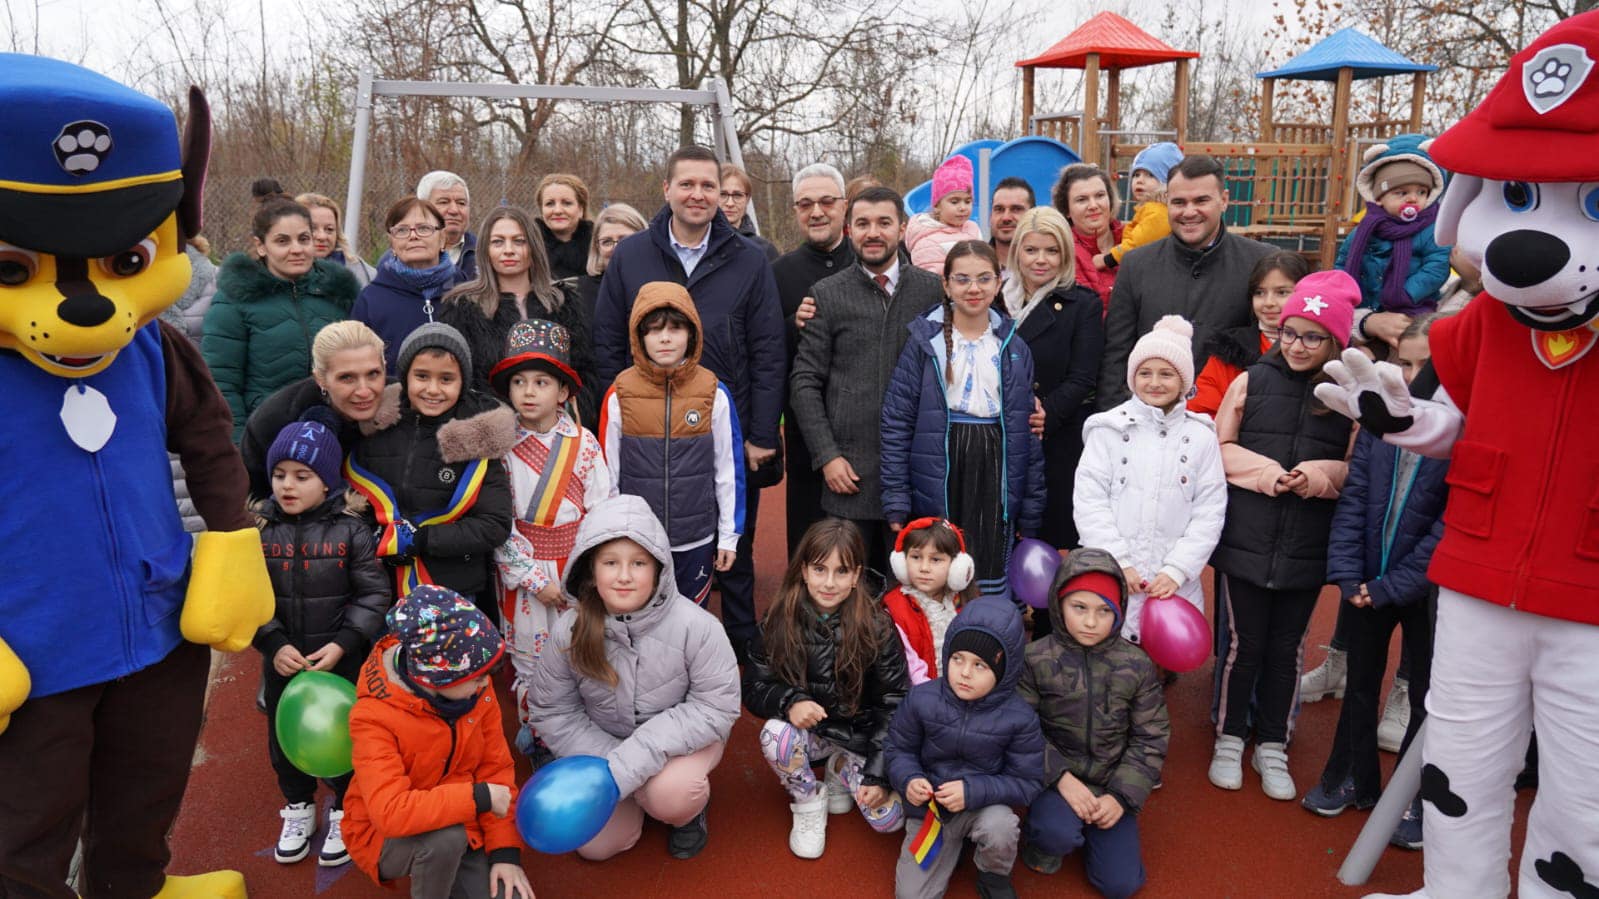 Bucurie mare pentru copiii din Aninoasa. Consiliul Județean Dâmbovița și Primăria au amenajat un loc de joacă, inaugurat chiar de Moș Nicolae. Tot astăzi au fost aprinse și luminile de Crăciun în comună.